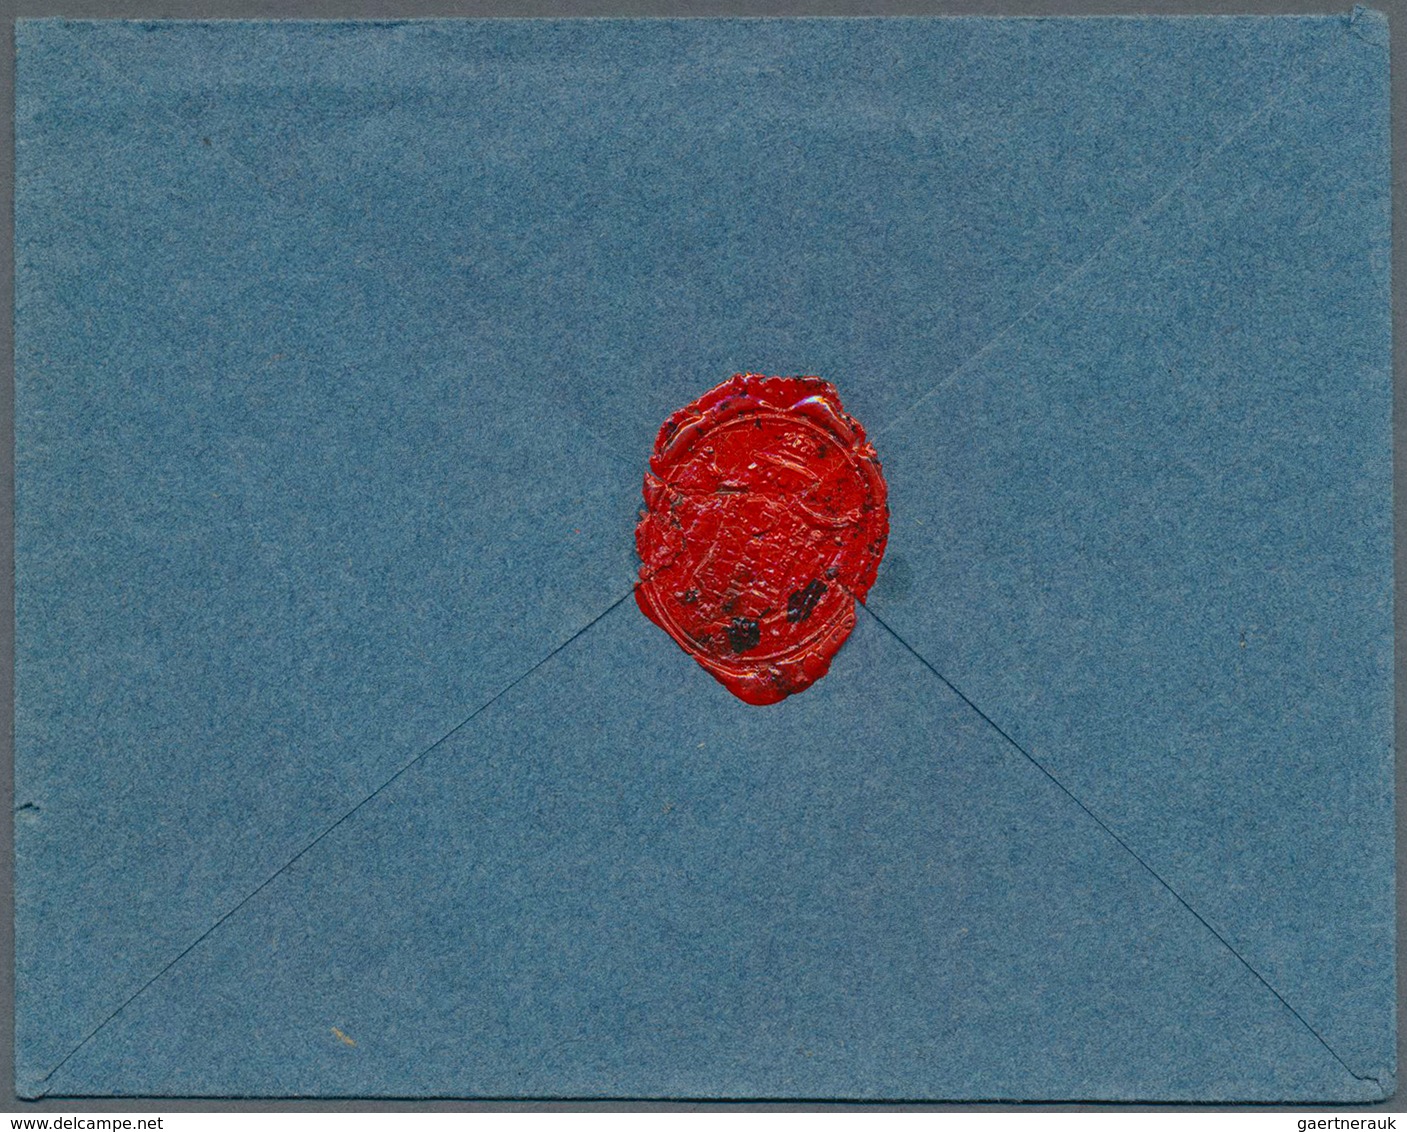 Preußen - Vorphilatelie: 1840 Ca., L2 "Berlin / 28 11", Klar Auf Gesiegeltem Blauen Briefumschlag An - Prephilately